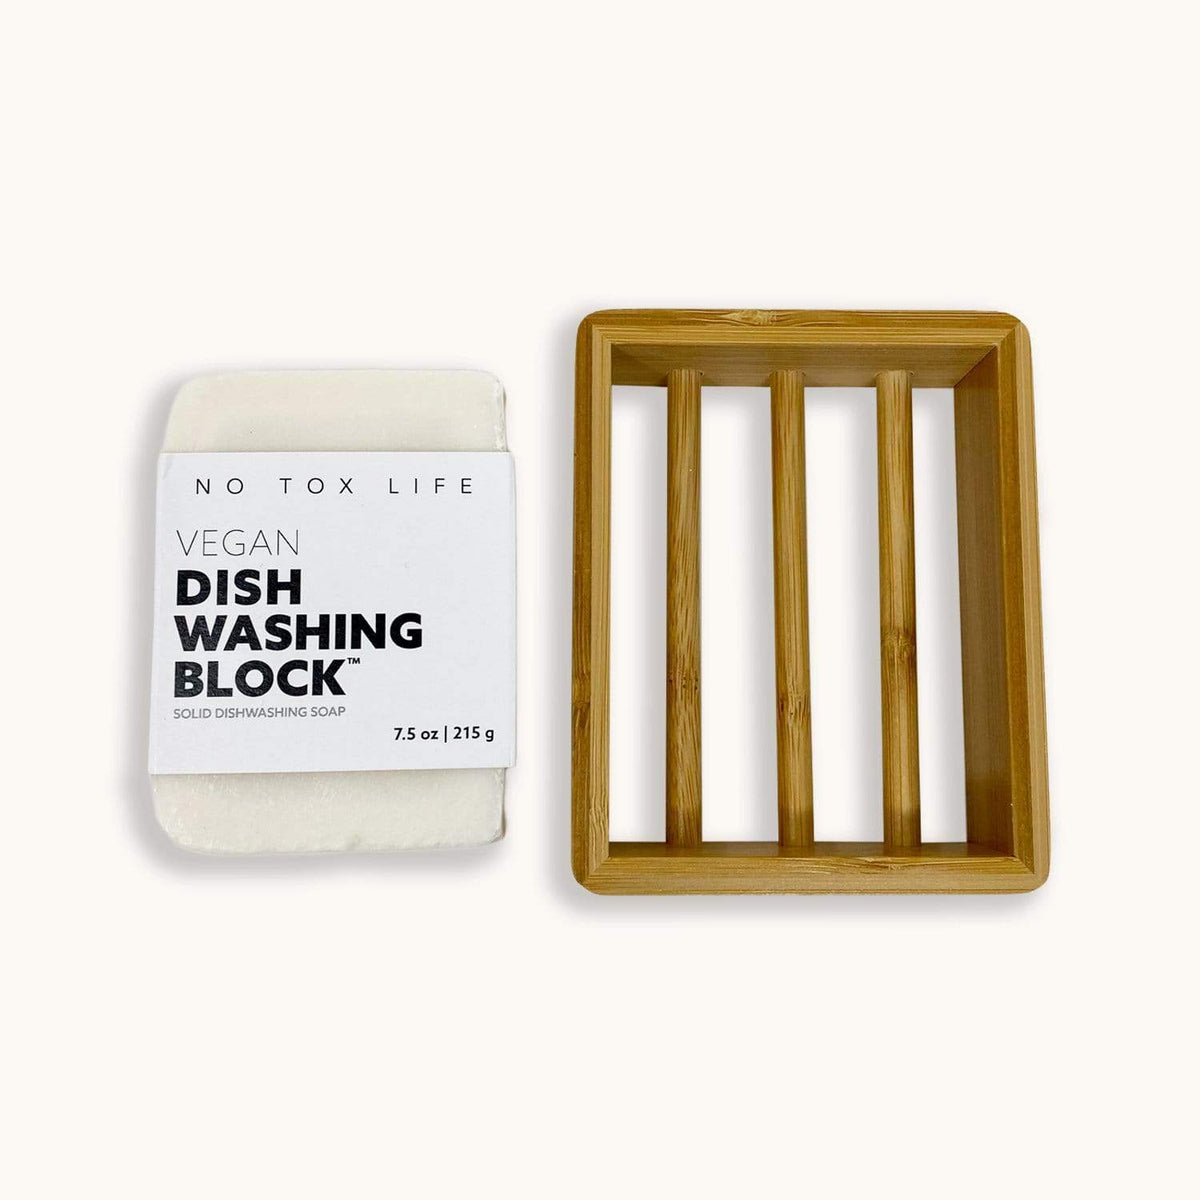 Dish Washing Block – The Zeroish Co.